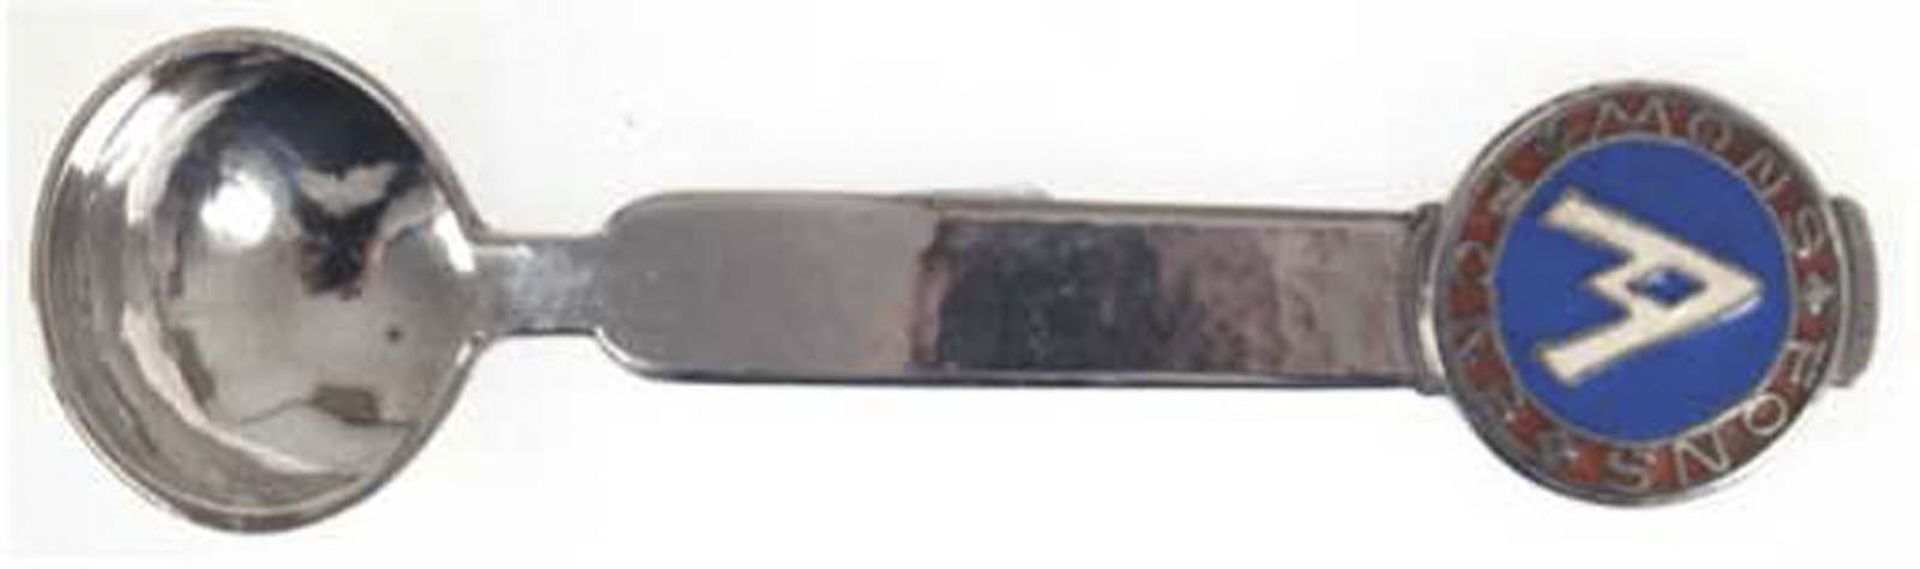 Rahmkelle, 800er Silber, punziert, ca. 59 g, mit Emailledekor, Hammerschlagdekor, Griffende m